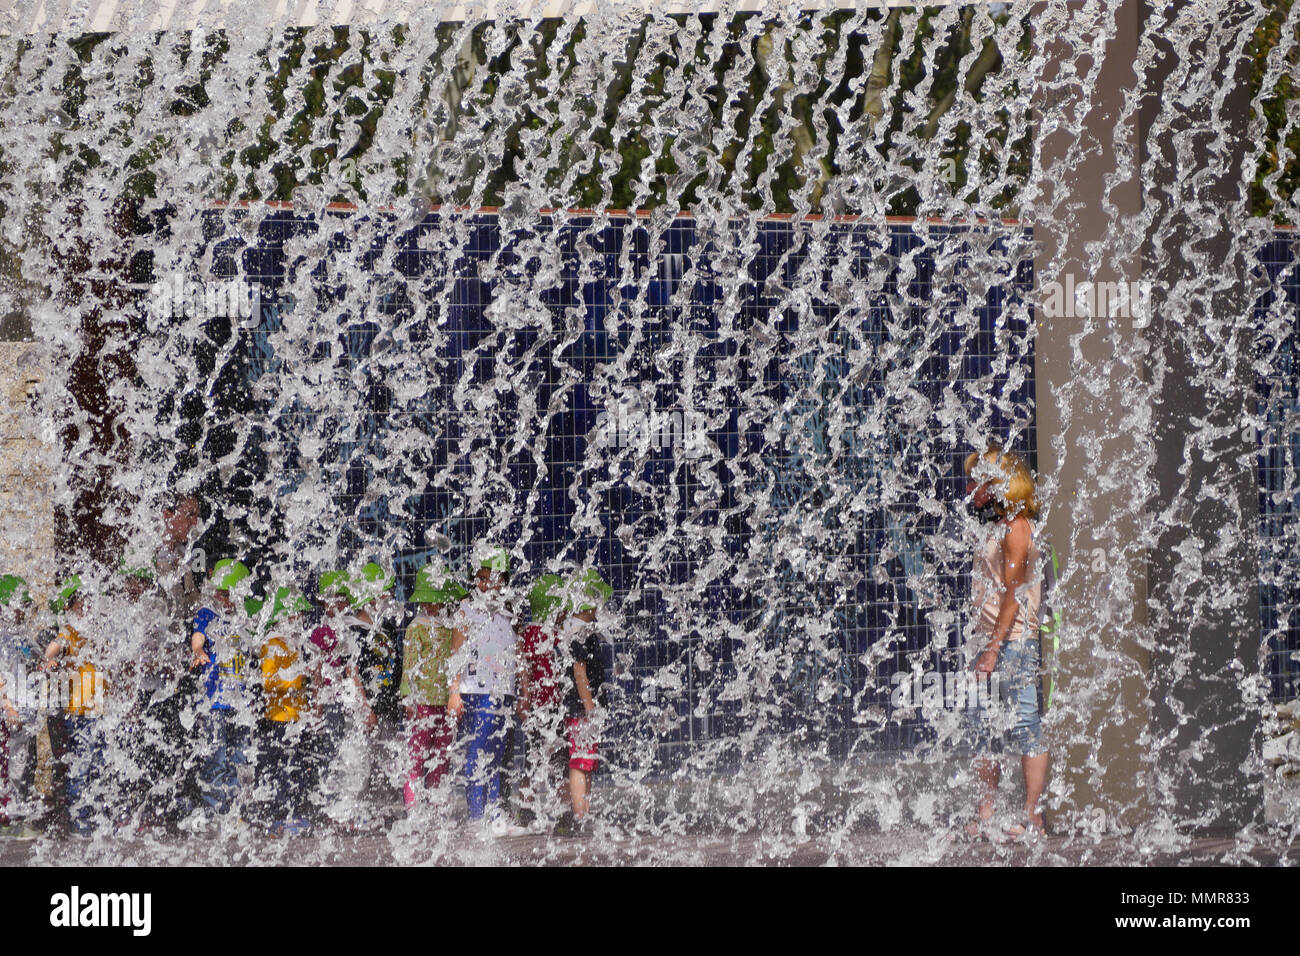 Persone in piedi dietro una cortina di acqua, nel Parco delle Nazioni district, Lisbona, Portogallo Foto Stock